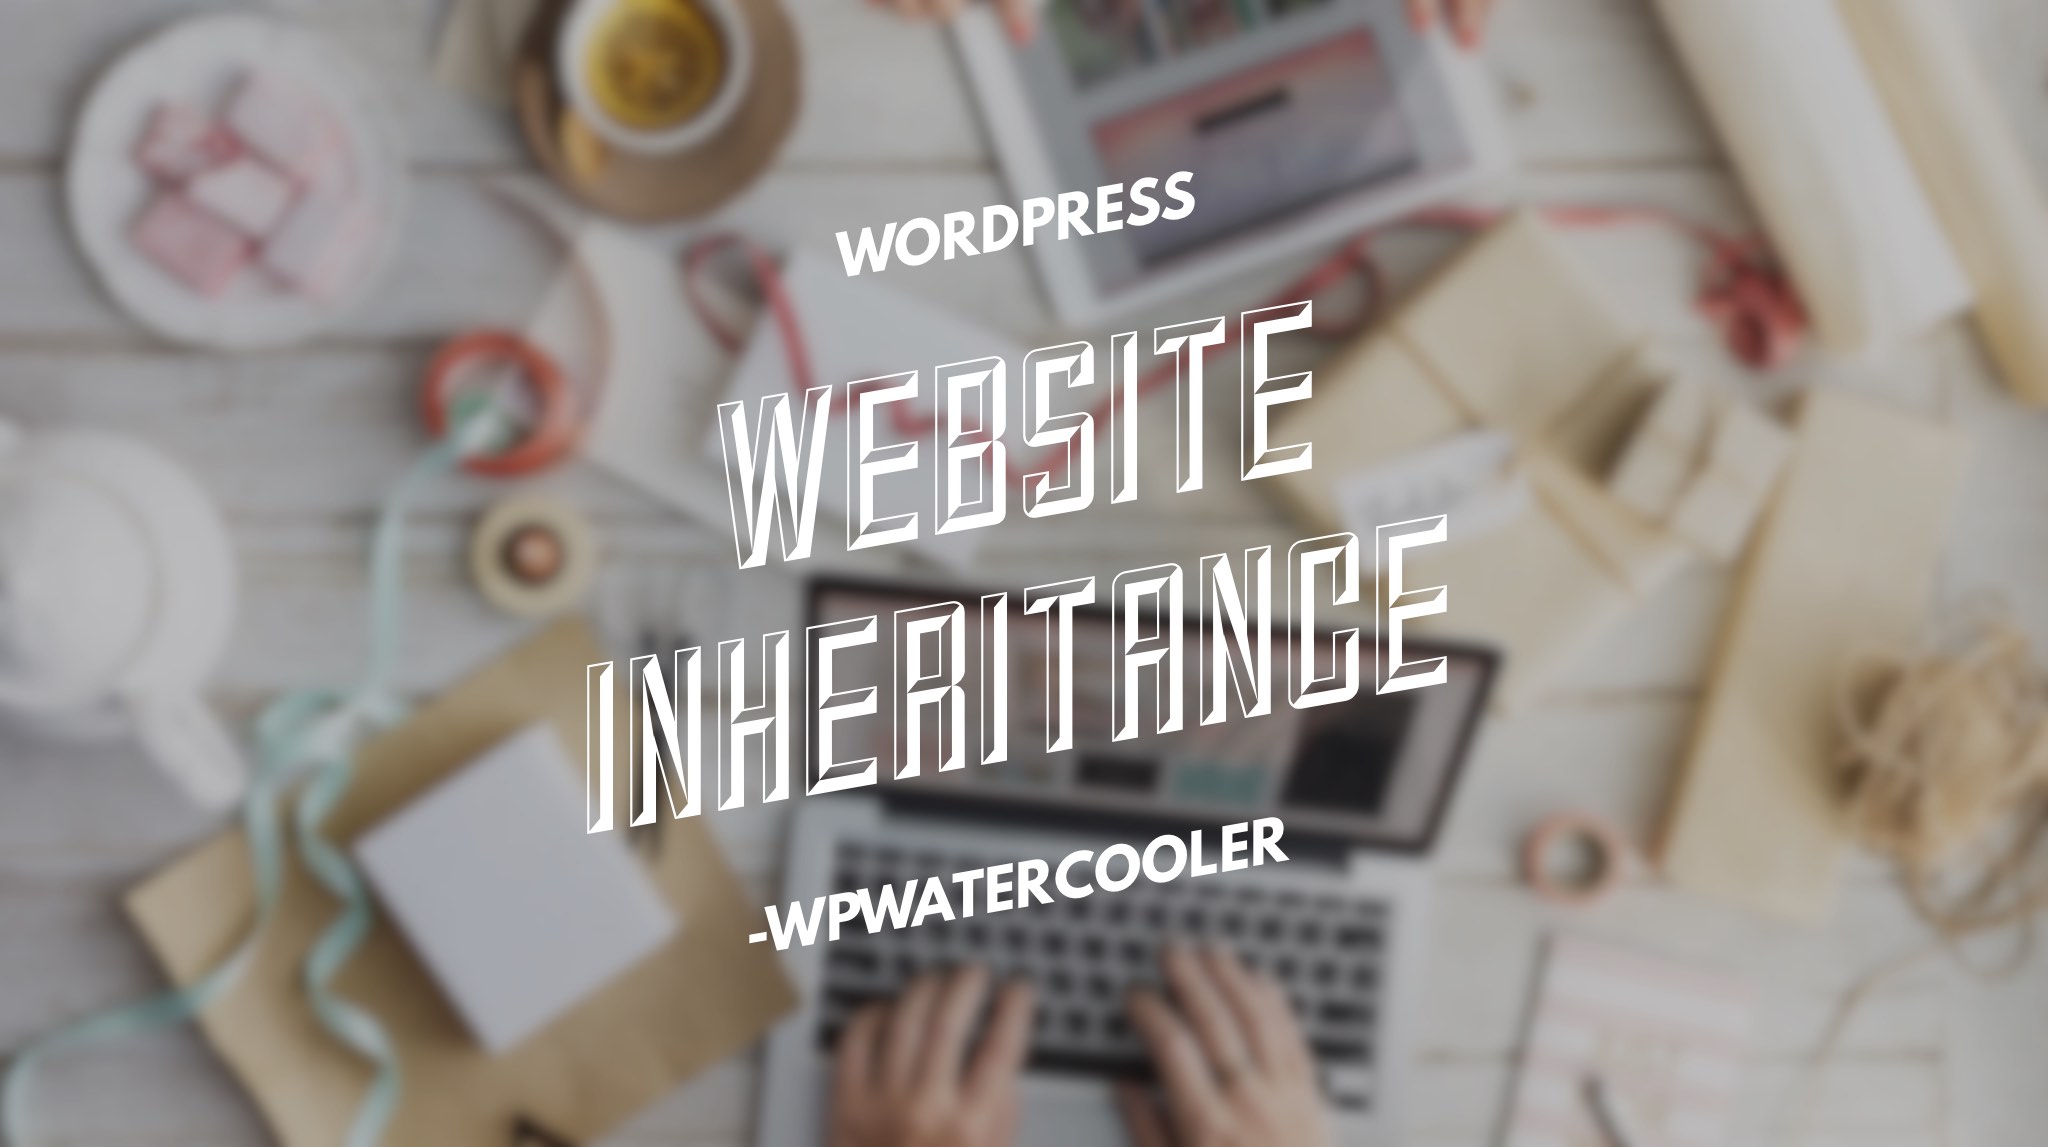 EP267 - Website Inheritance - WPwatercooler